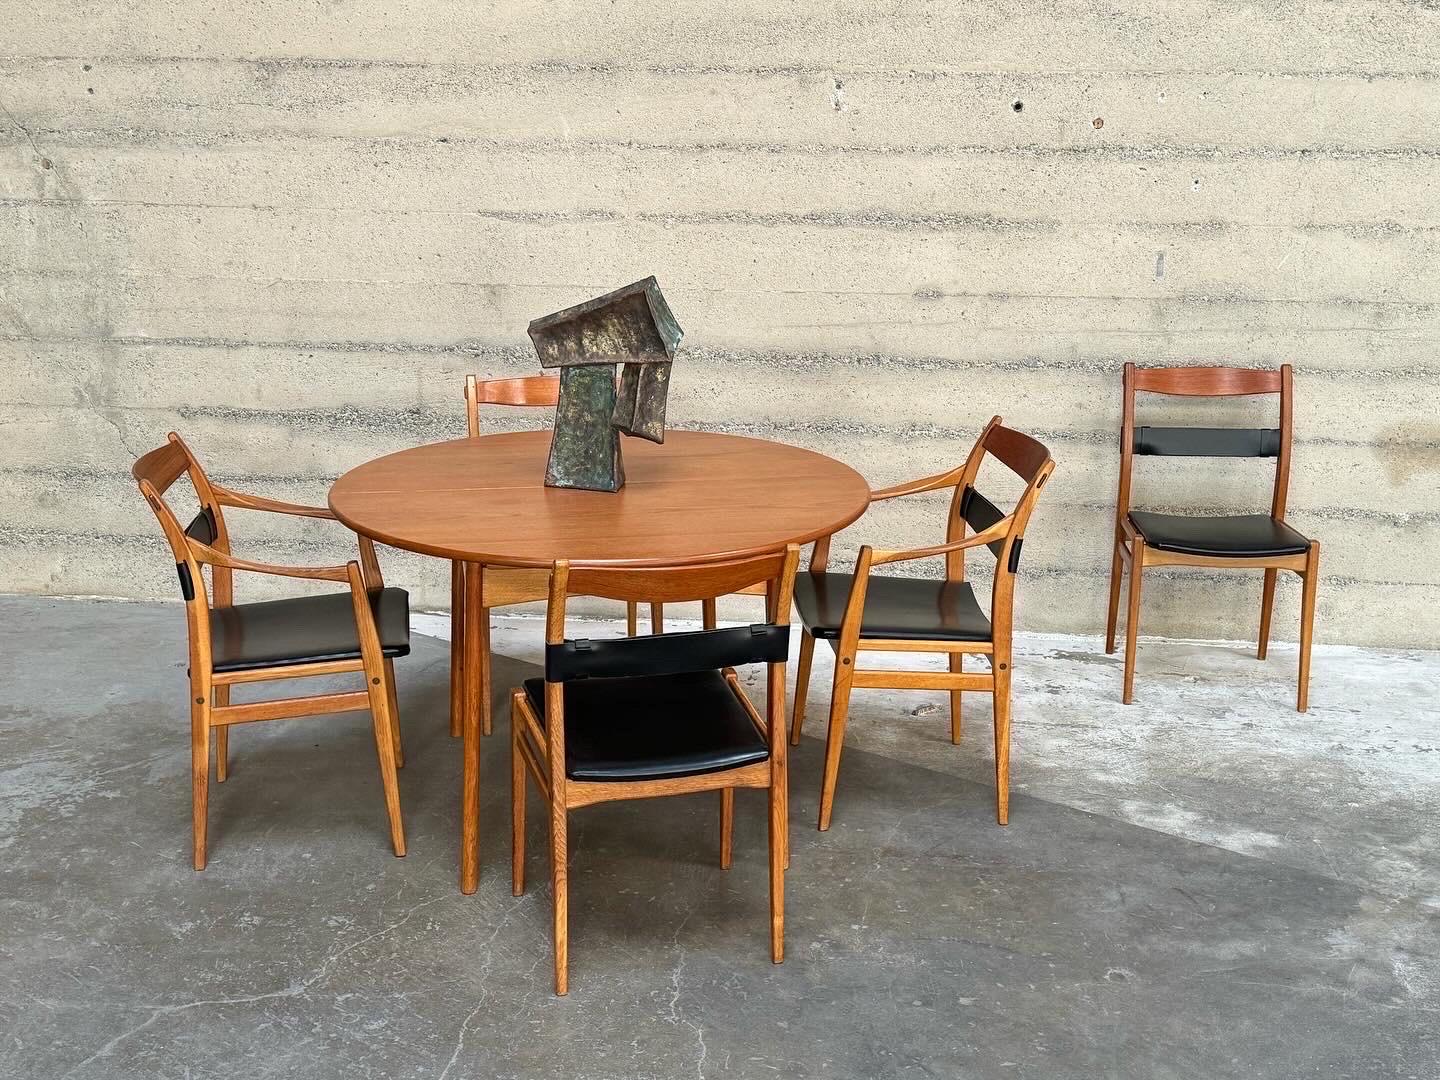 Ensemble de salle à manger conçu par Yngve Ekstrom pour Dux (Suède) à la fin des années 1950 et au début des années 1960. L'ensemble est construit en teck et en chêne, les chaises de salle à manger sont en chêne, cuir, vinyle avec des fixations en